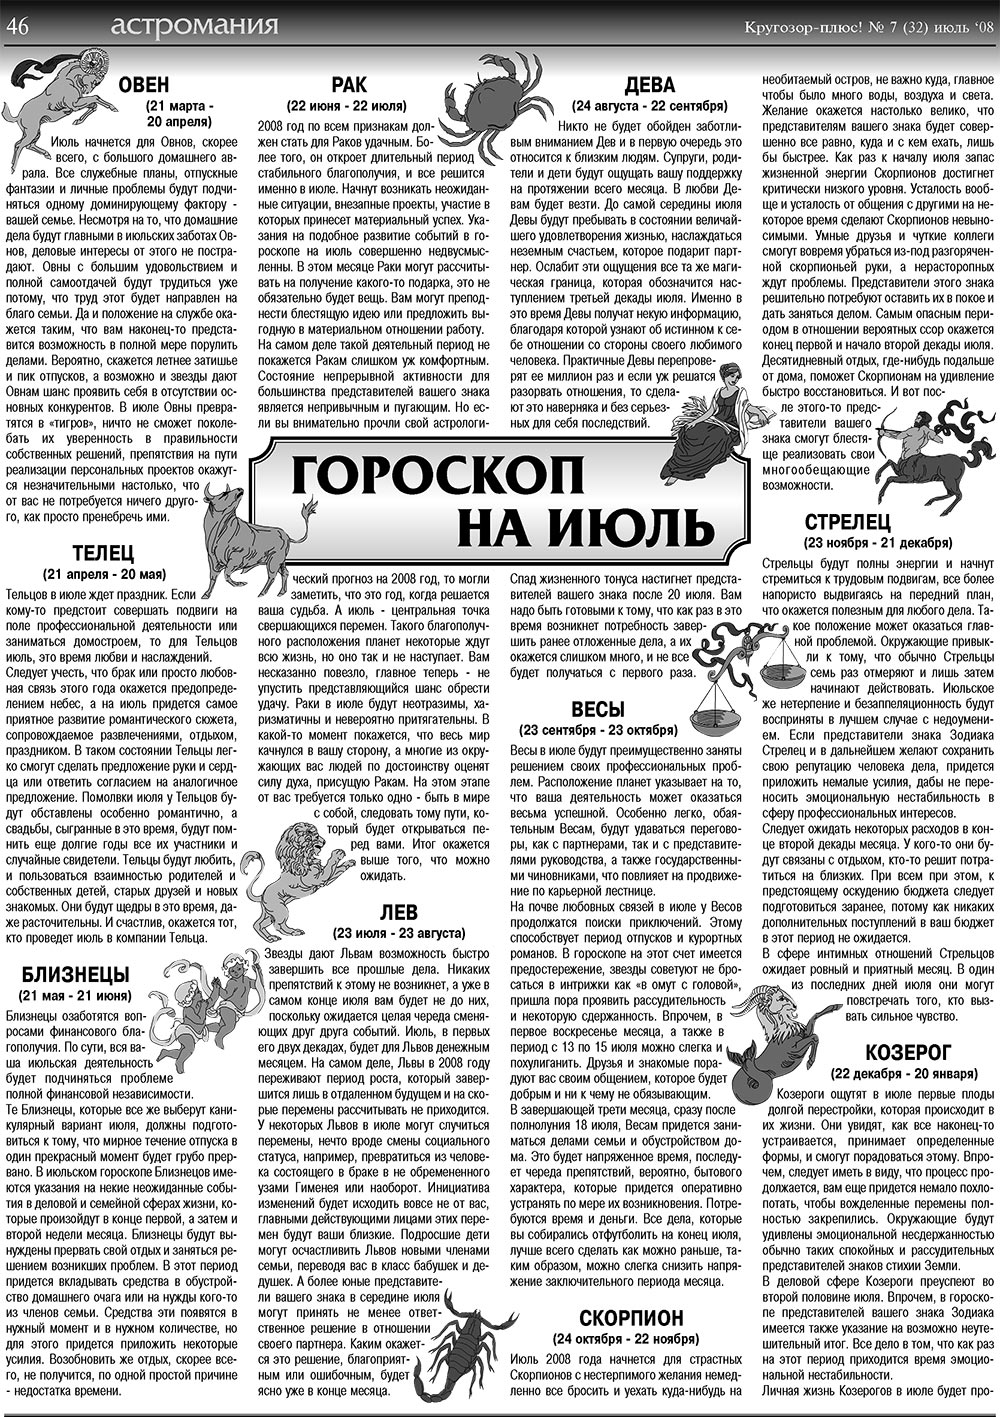 Кругозор плюс!, газета. 2008 №7 стр.46